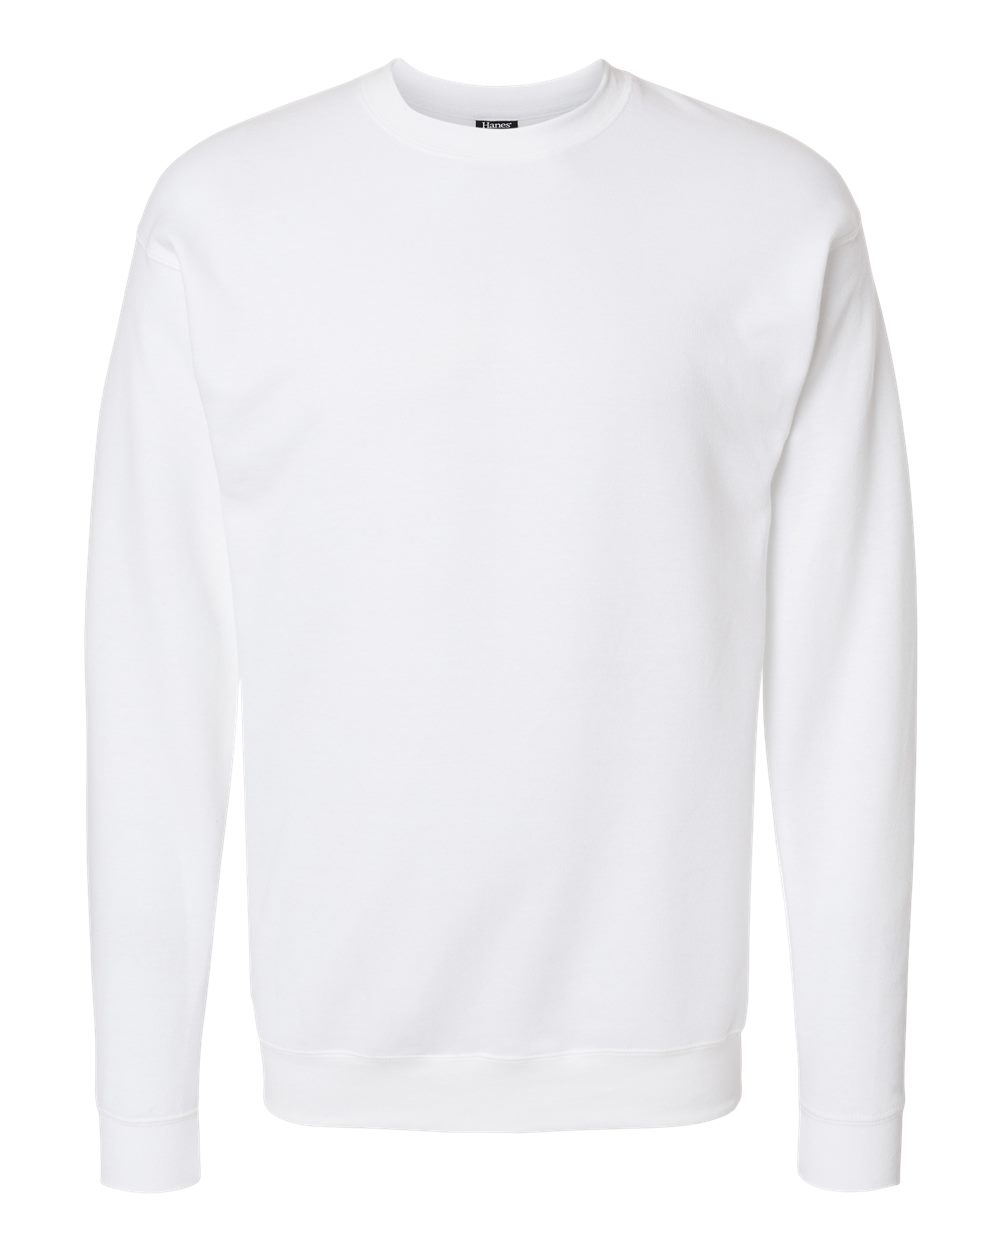 Hanes RS160 - Perfect Fleece Crewneck Sweatshirt $12.96 - Sweatshirts